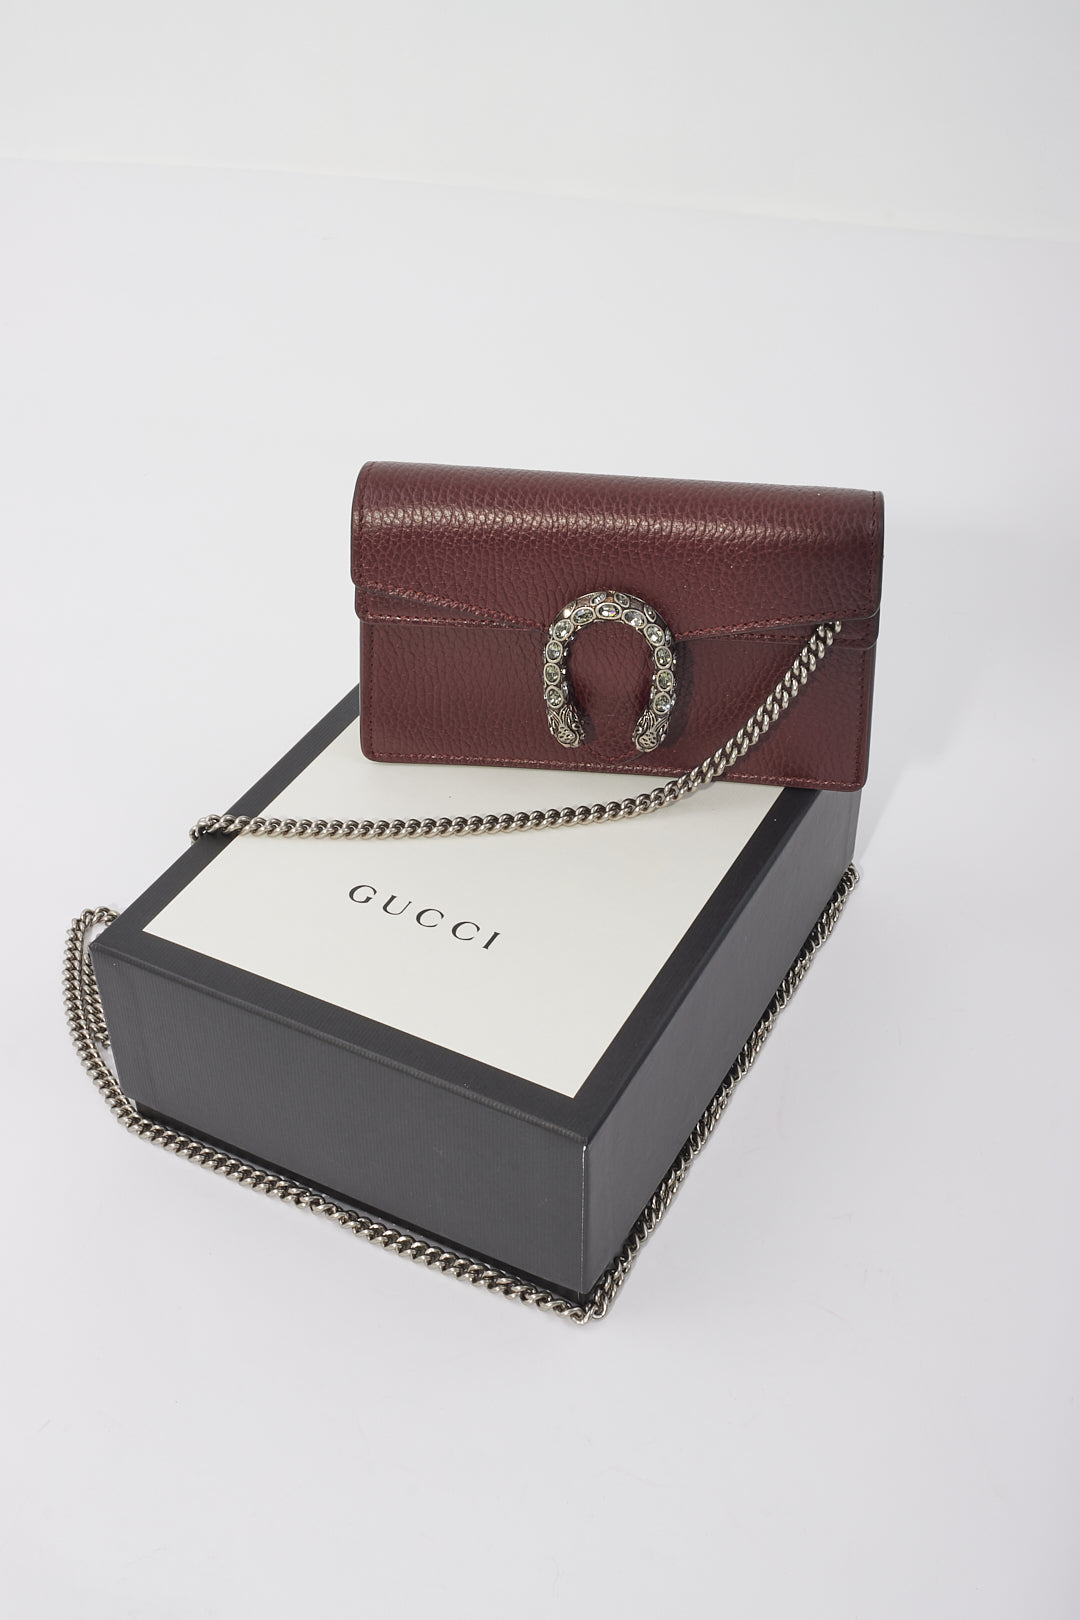 Gucci Dionysus Super Mini sac en cuir bordeaux